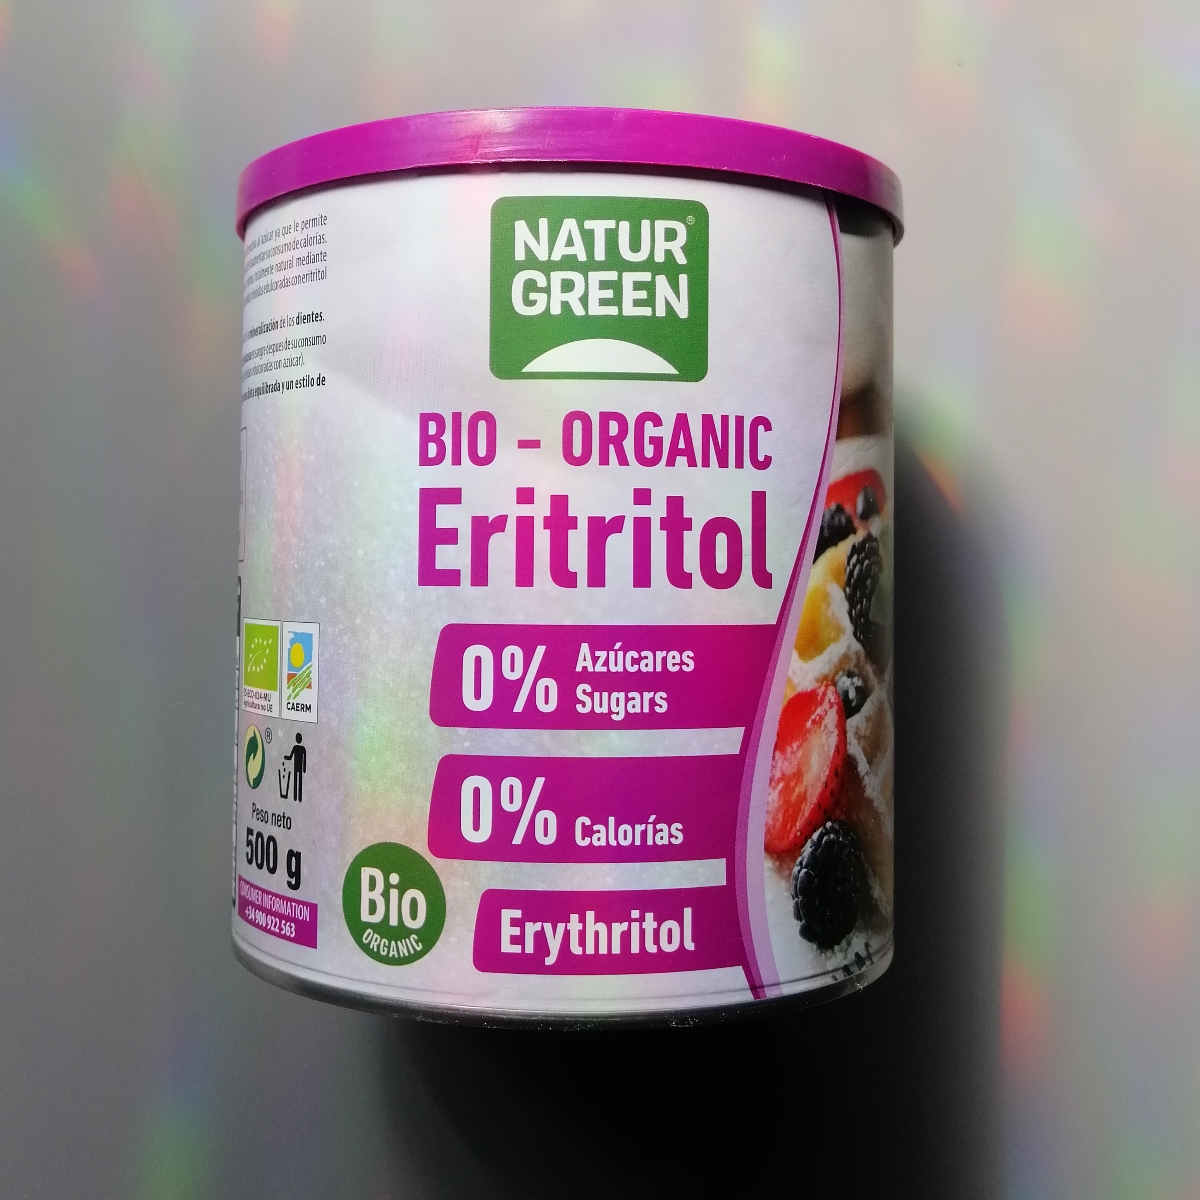 NaturGreen - Eritritol Bio, Edulcorante Natural, Orgánico